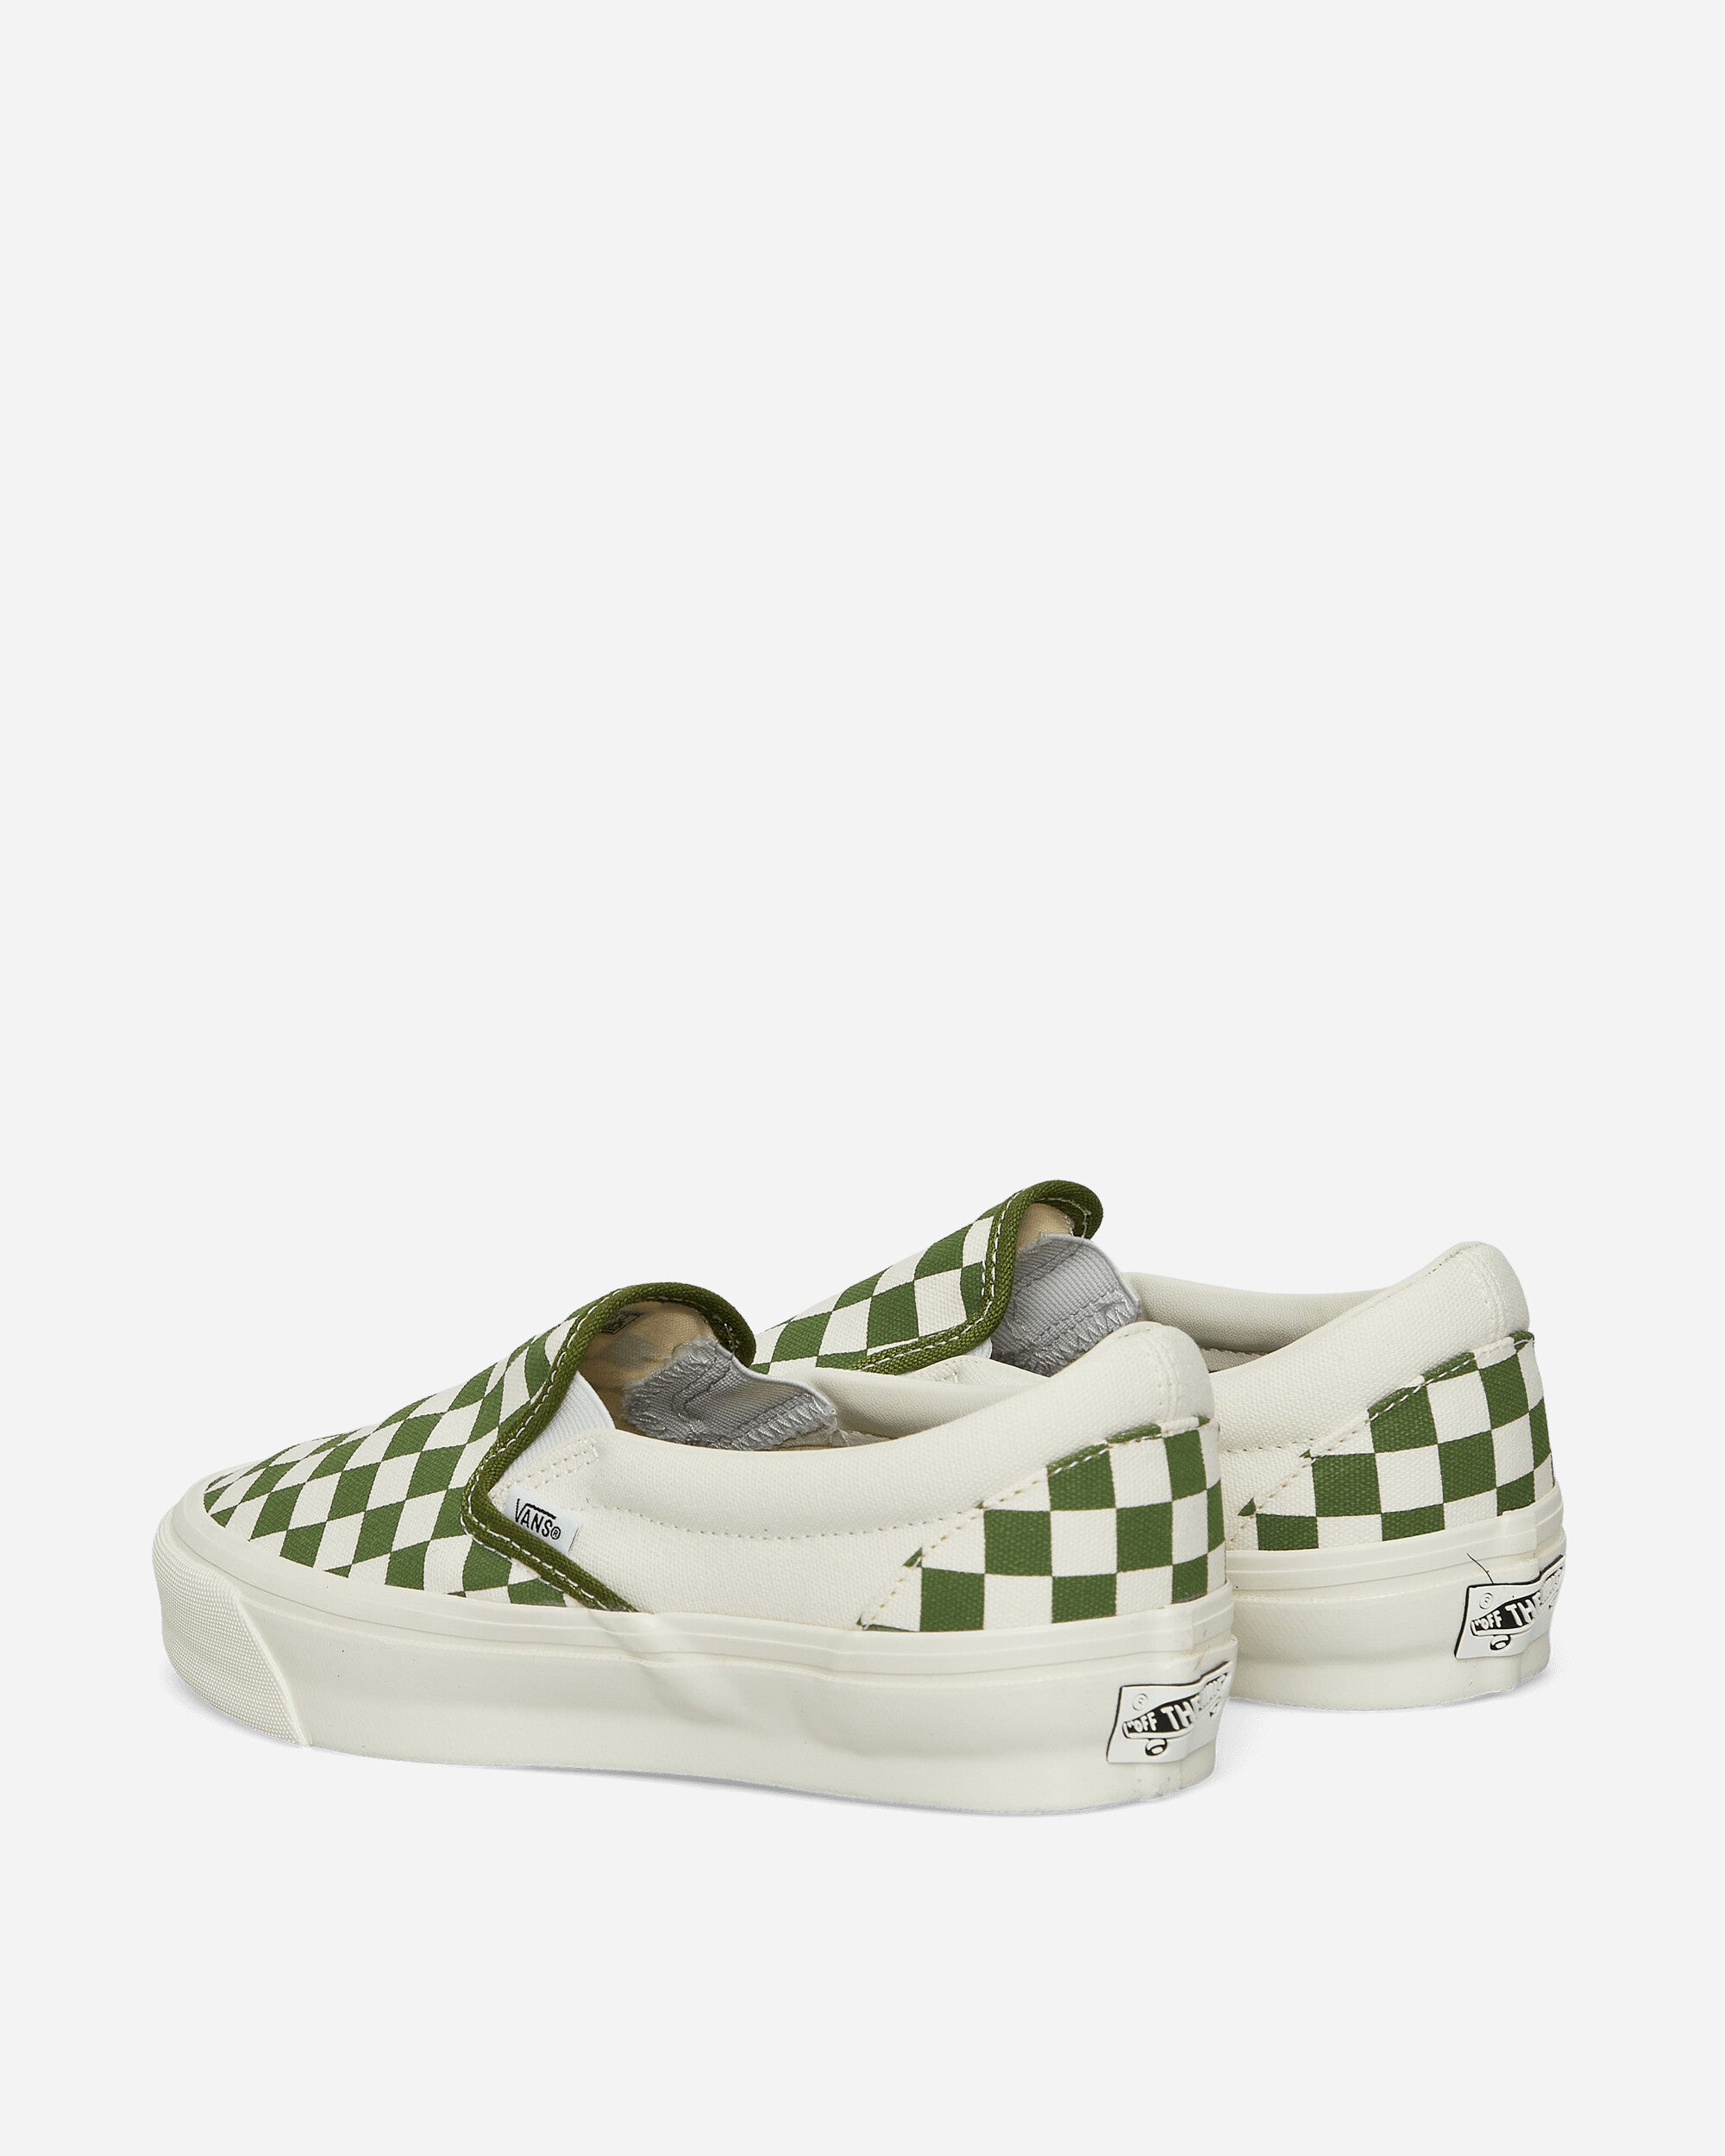 Vans Speed Vibram Checkerboard Pesto Sneakers Slip-On VN000CSECIB1